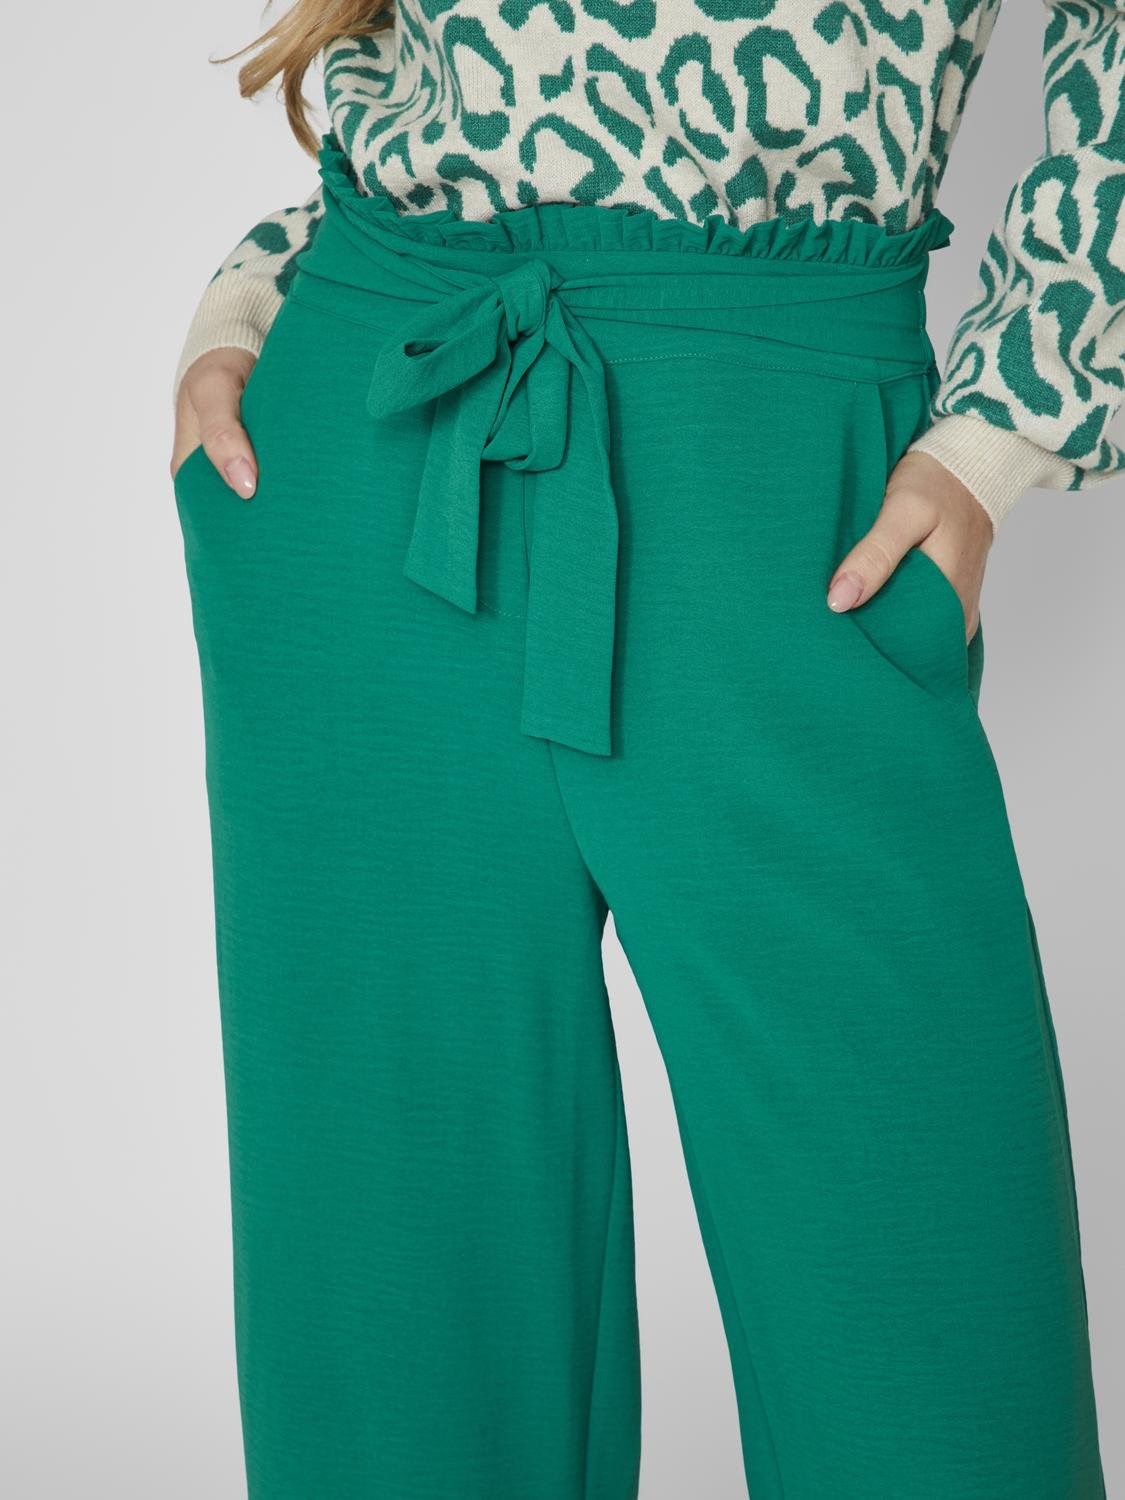 Pantalón Winnie culotte modelo 14092096 en color verde.